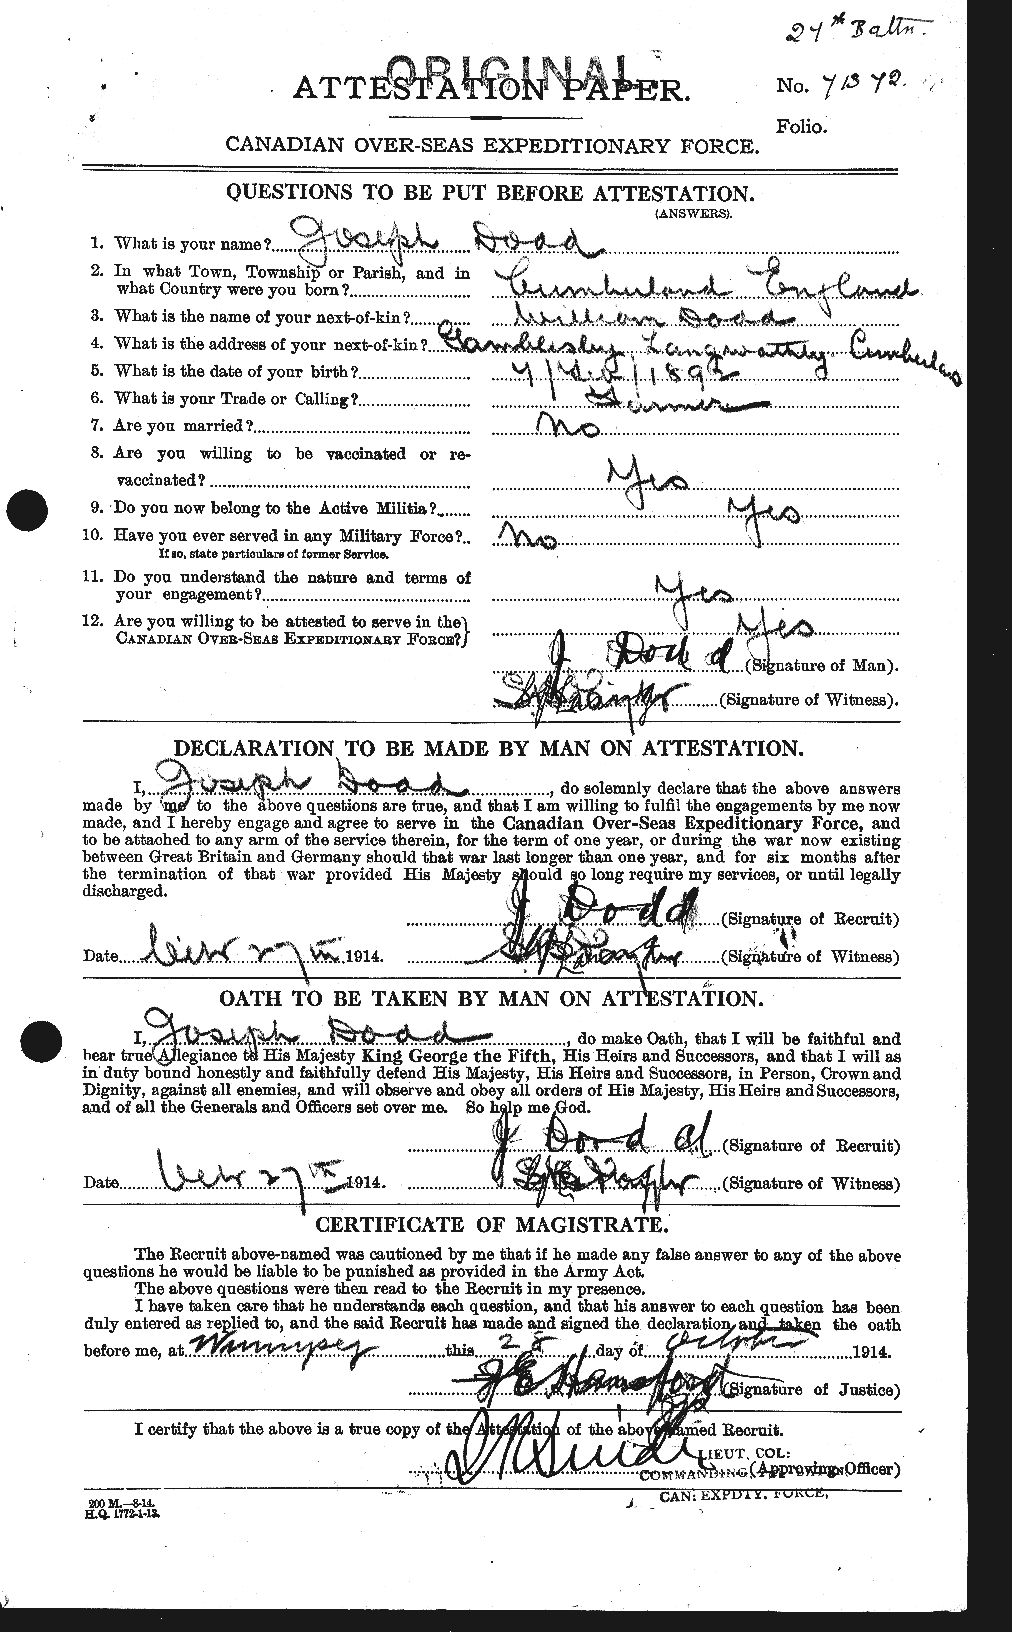 Dossiers du Personnel de la Première Guerre mondiale - CEC 294298a